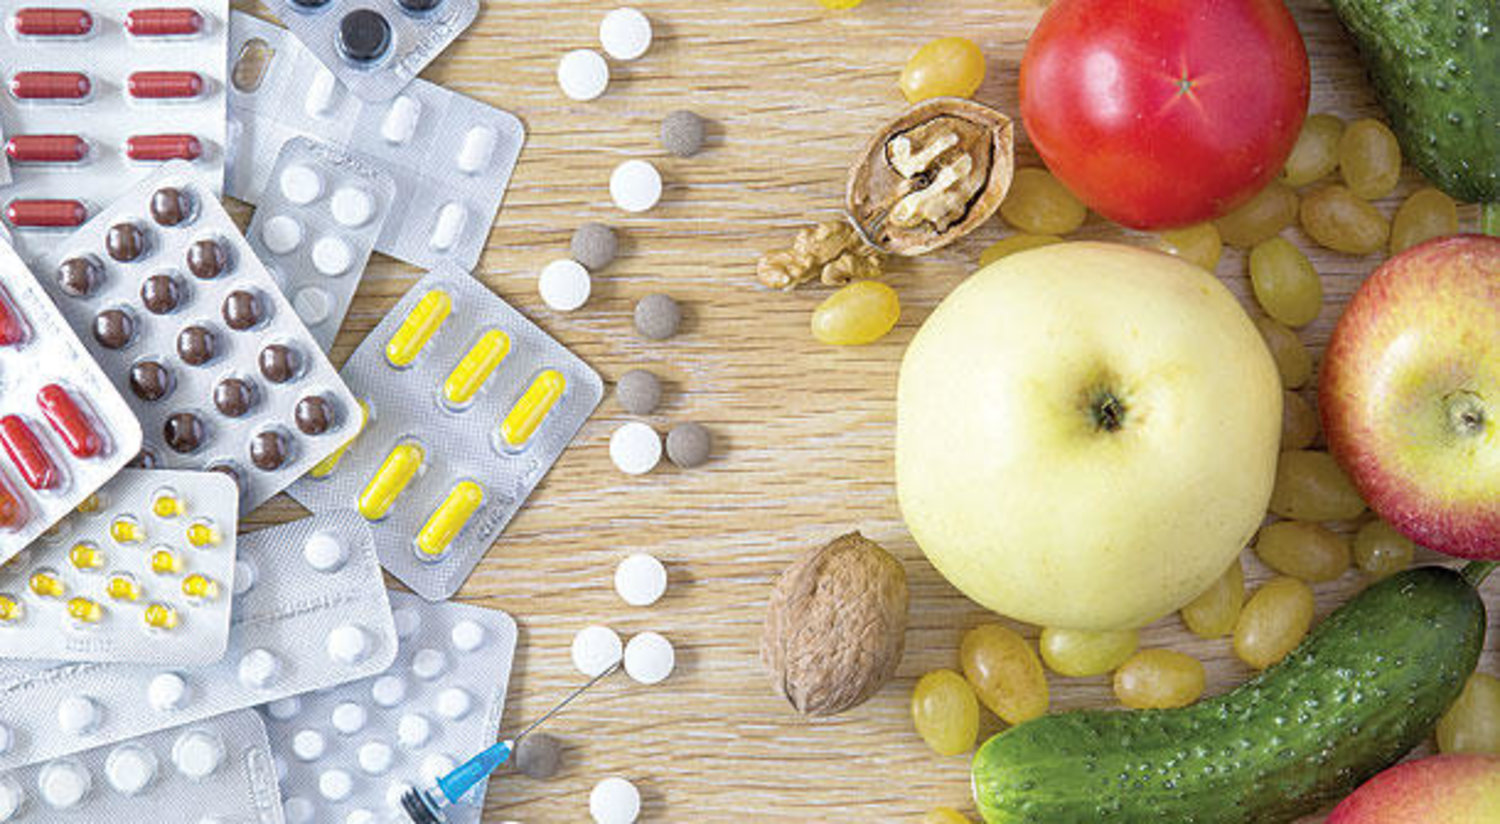 دراسة طبية تحذر من مخاطر مزج بعض أنواع الطعام مع الأدوية